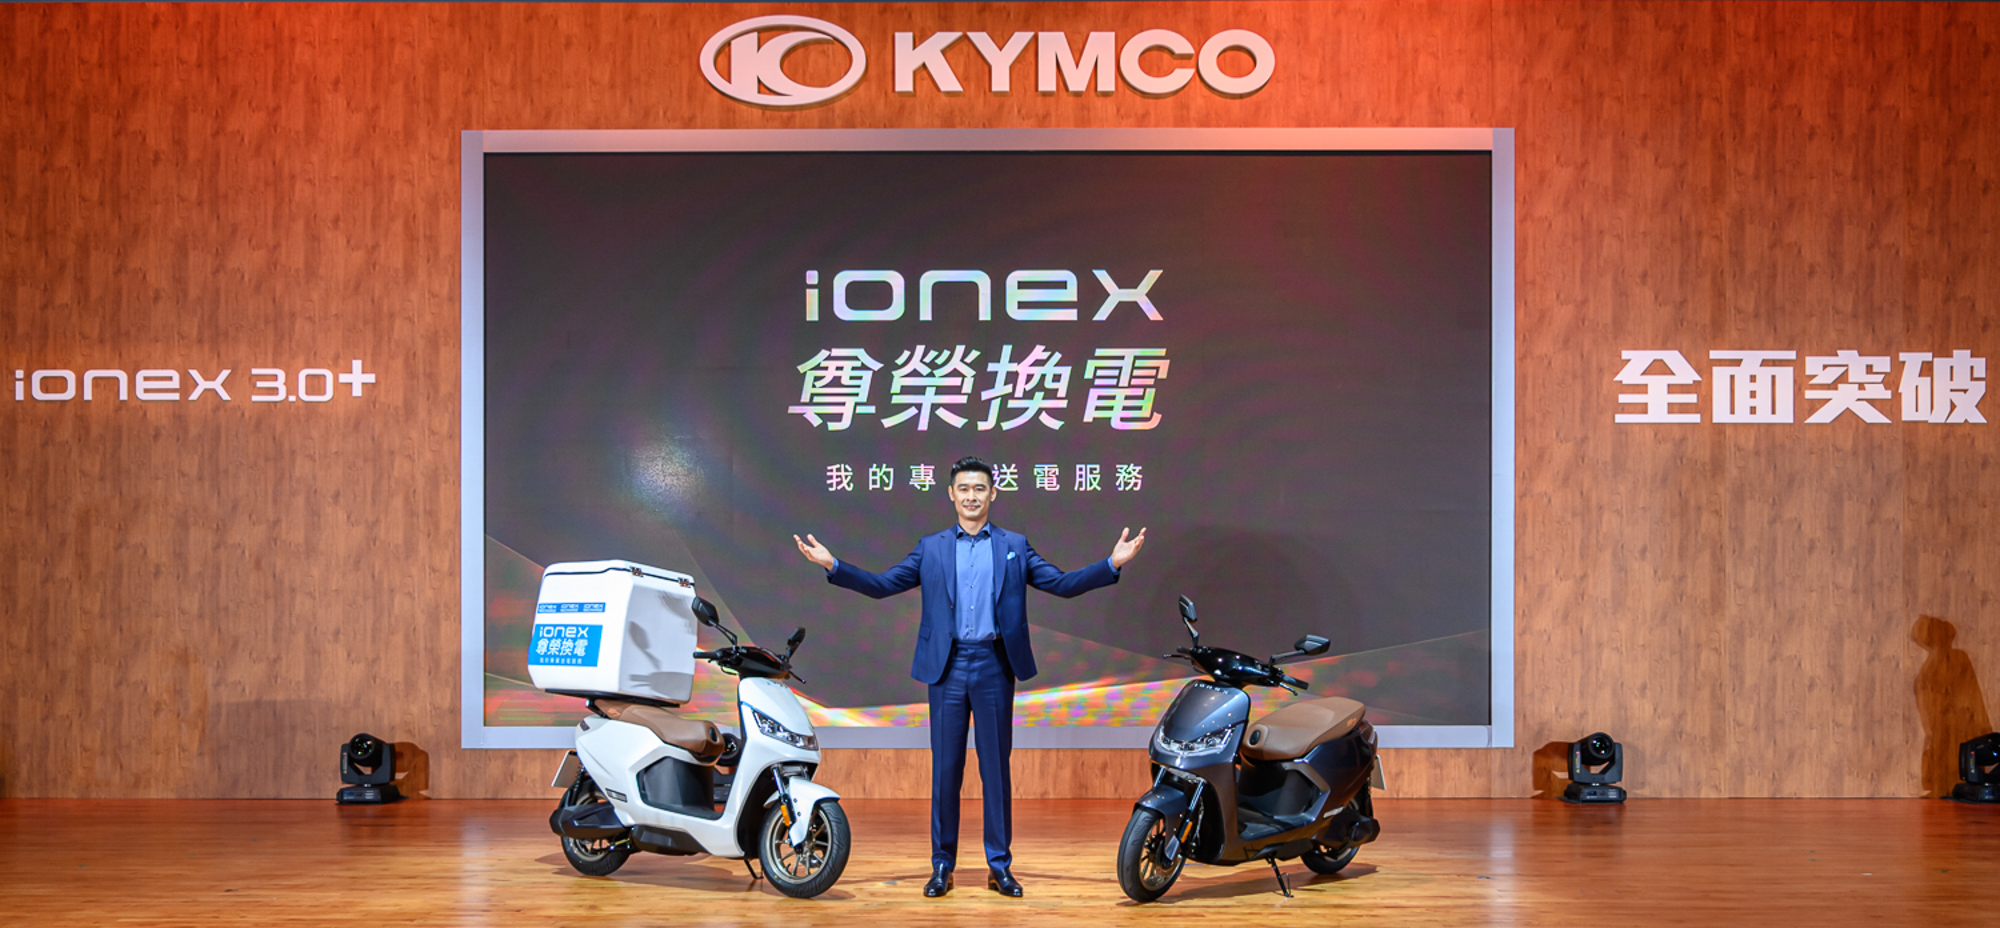 ▲ KYMCO 新推「Ionex 尊榮換電」！電池到府親送年底前 Ionex 3.0 車主免費享受